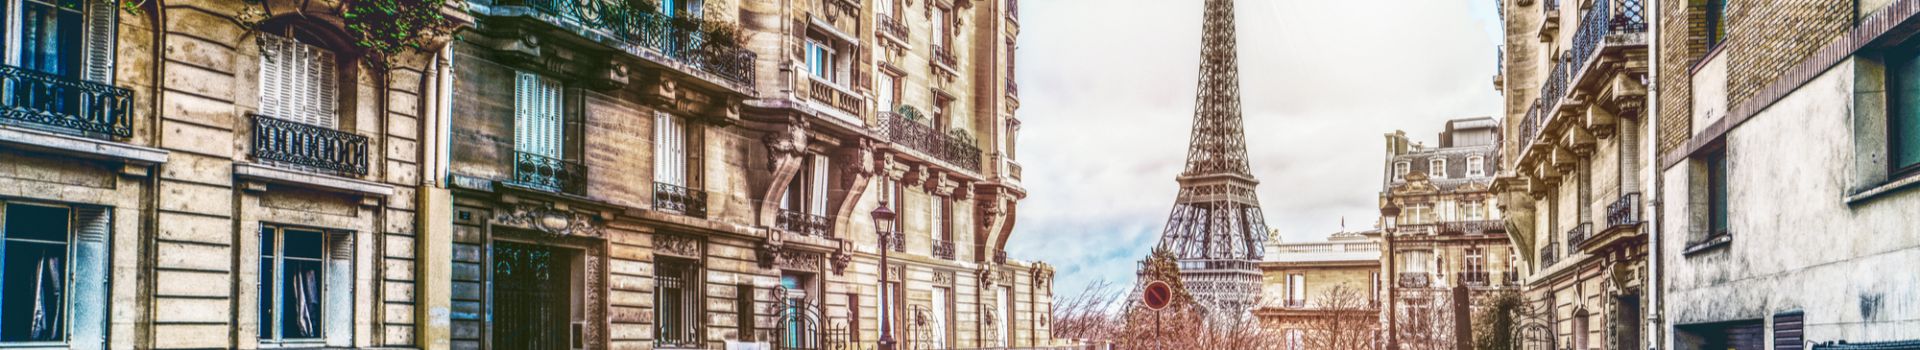 City Guide to Paris - Cassidy Travel Blog